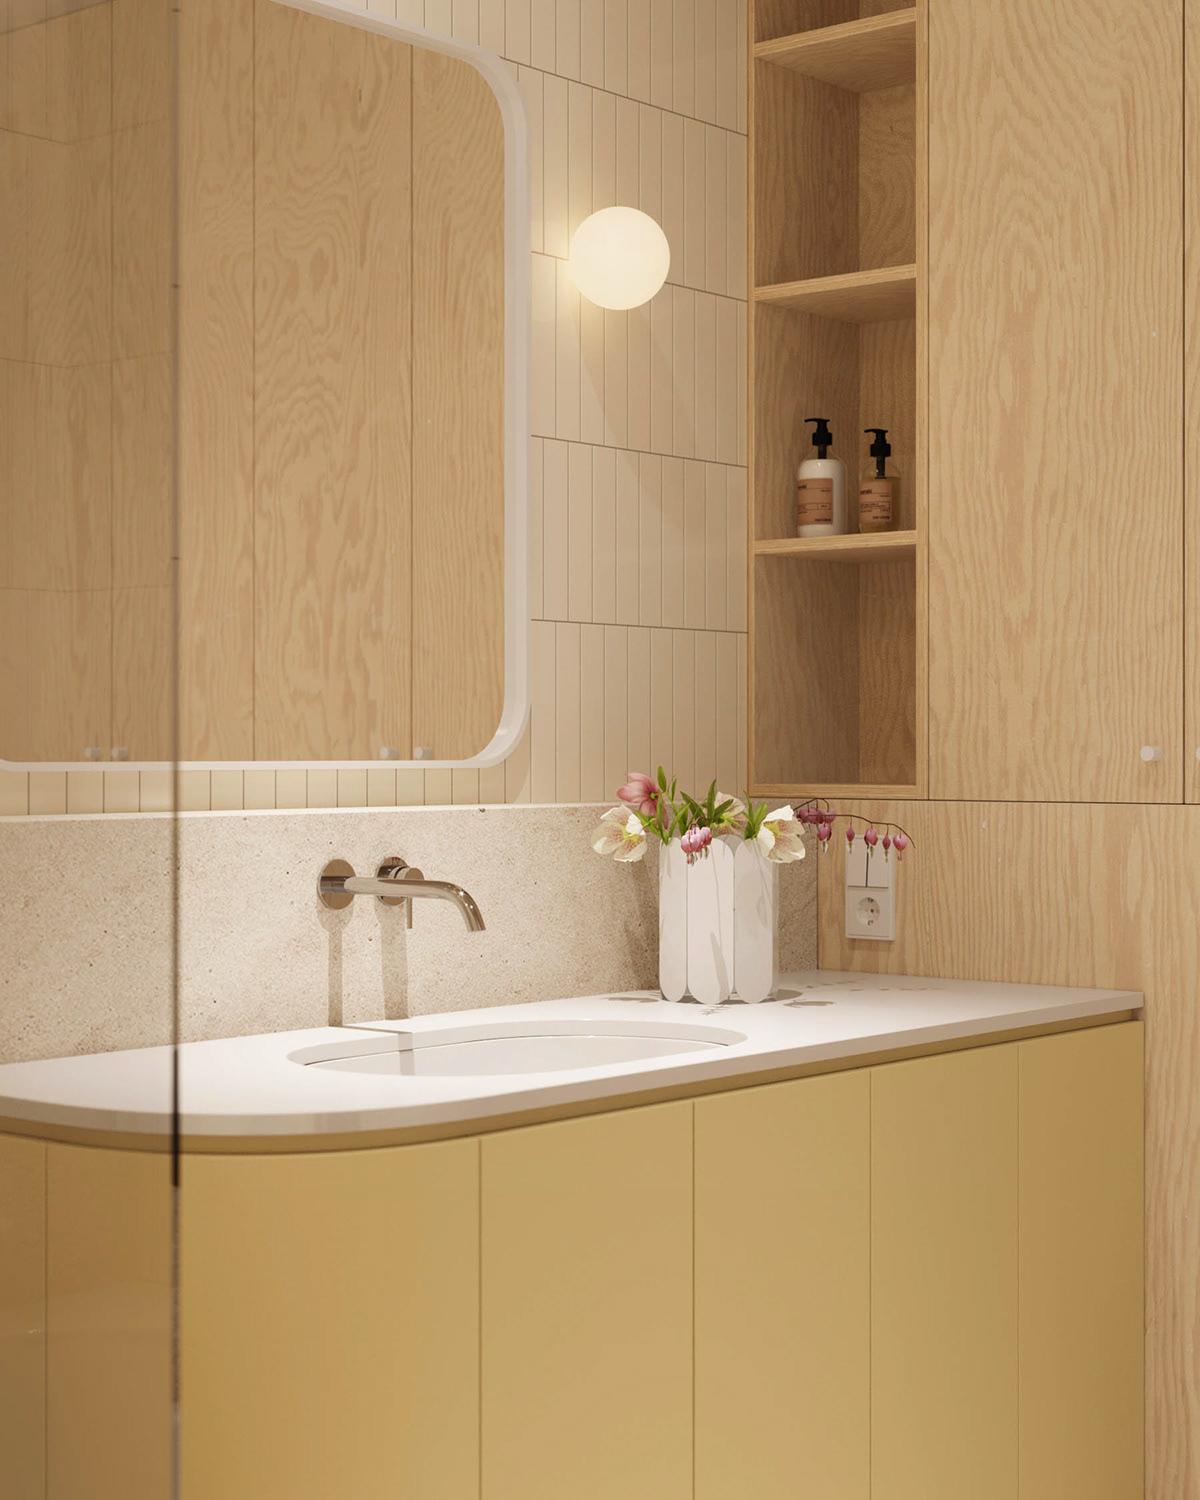 3ds max bathroom bedroom childroom corona render  kitchen living room plywood Scandinavian